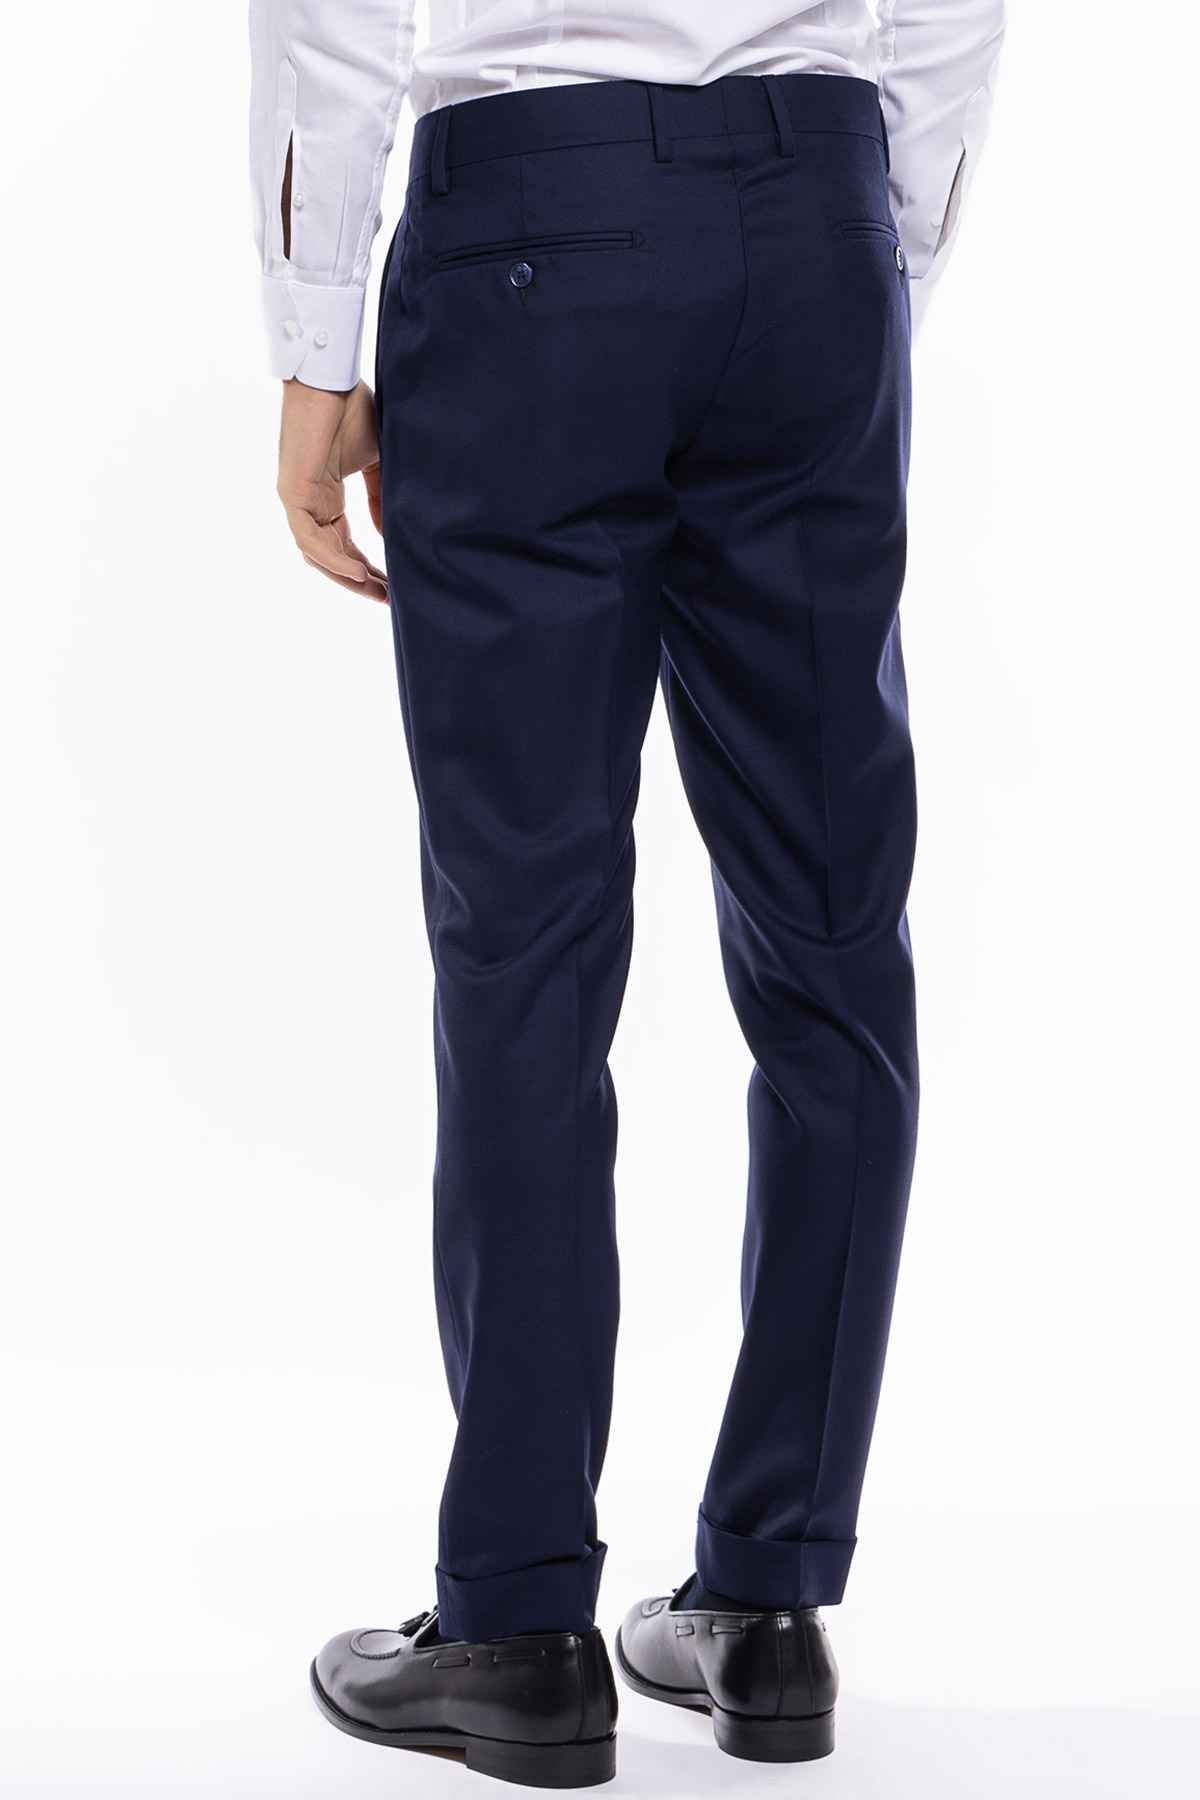 Pantalone uomo blu tasca america in fresco lana super 140's holland e sherry slim fit con risvolto di 5cm